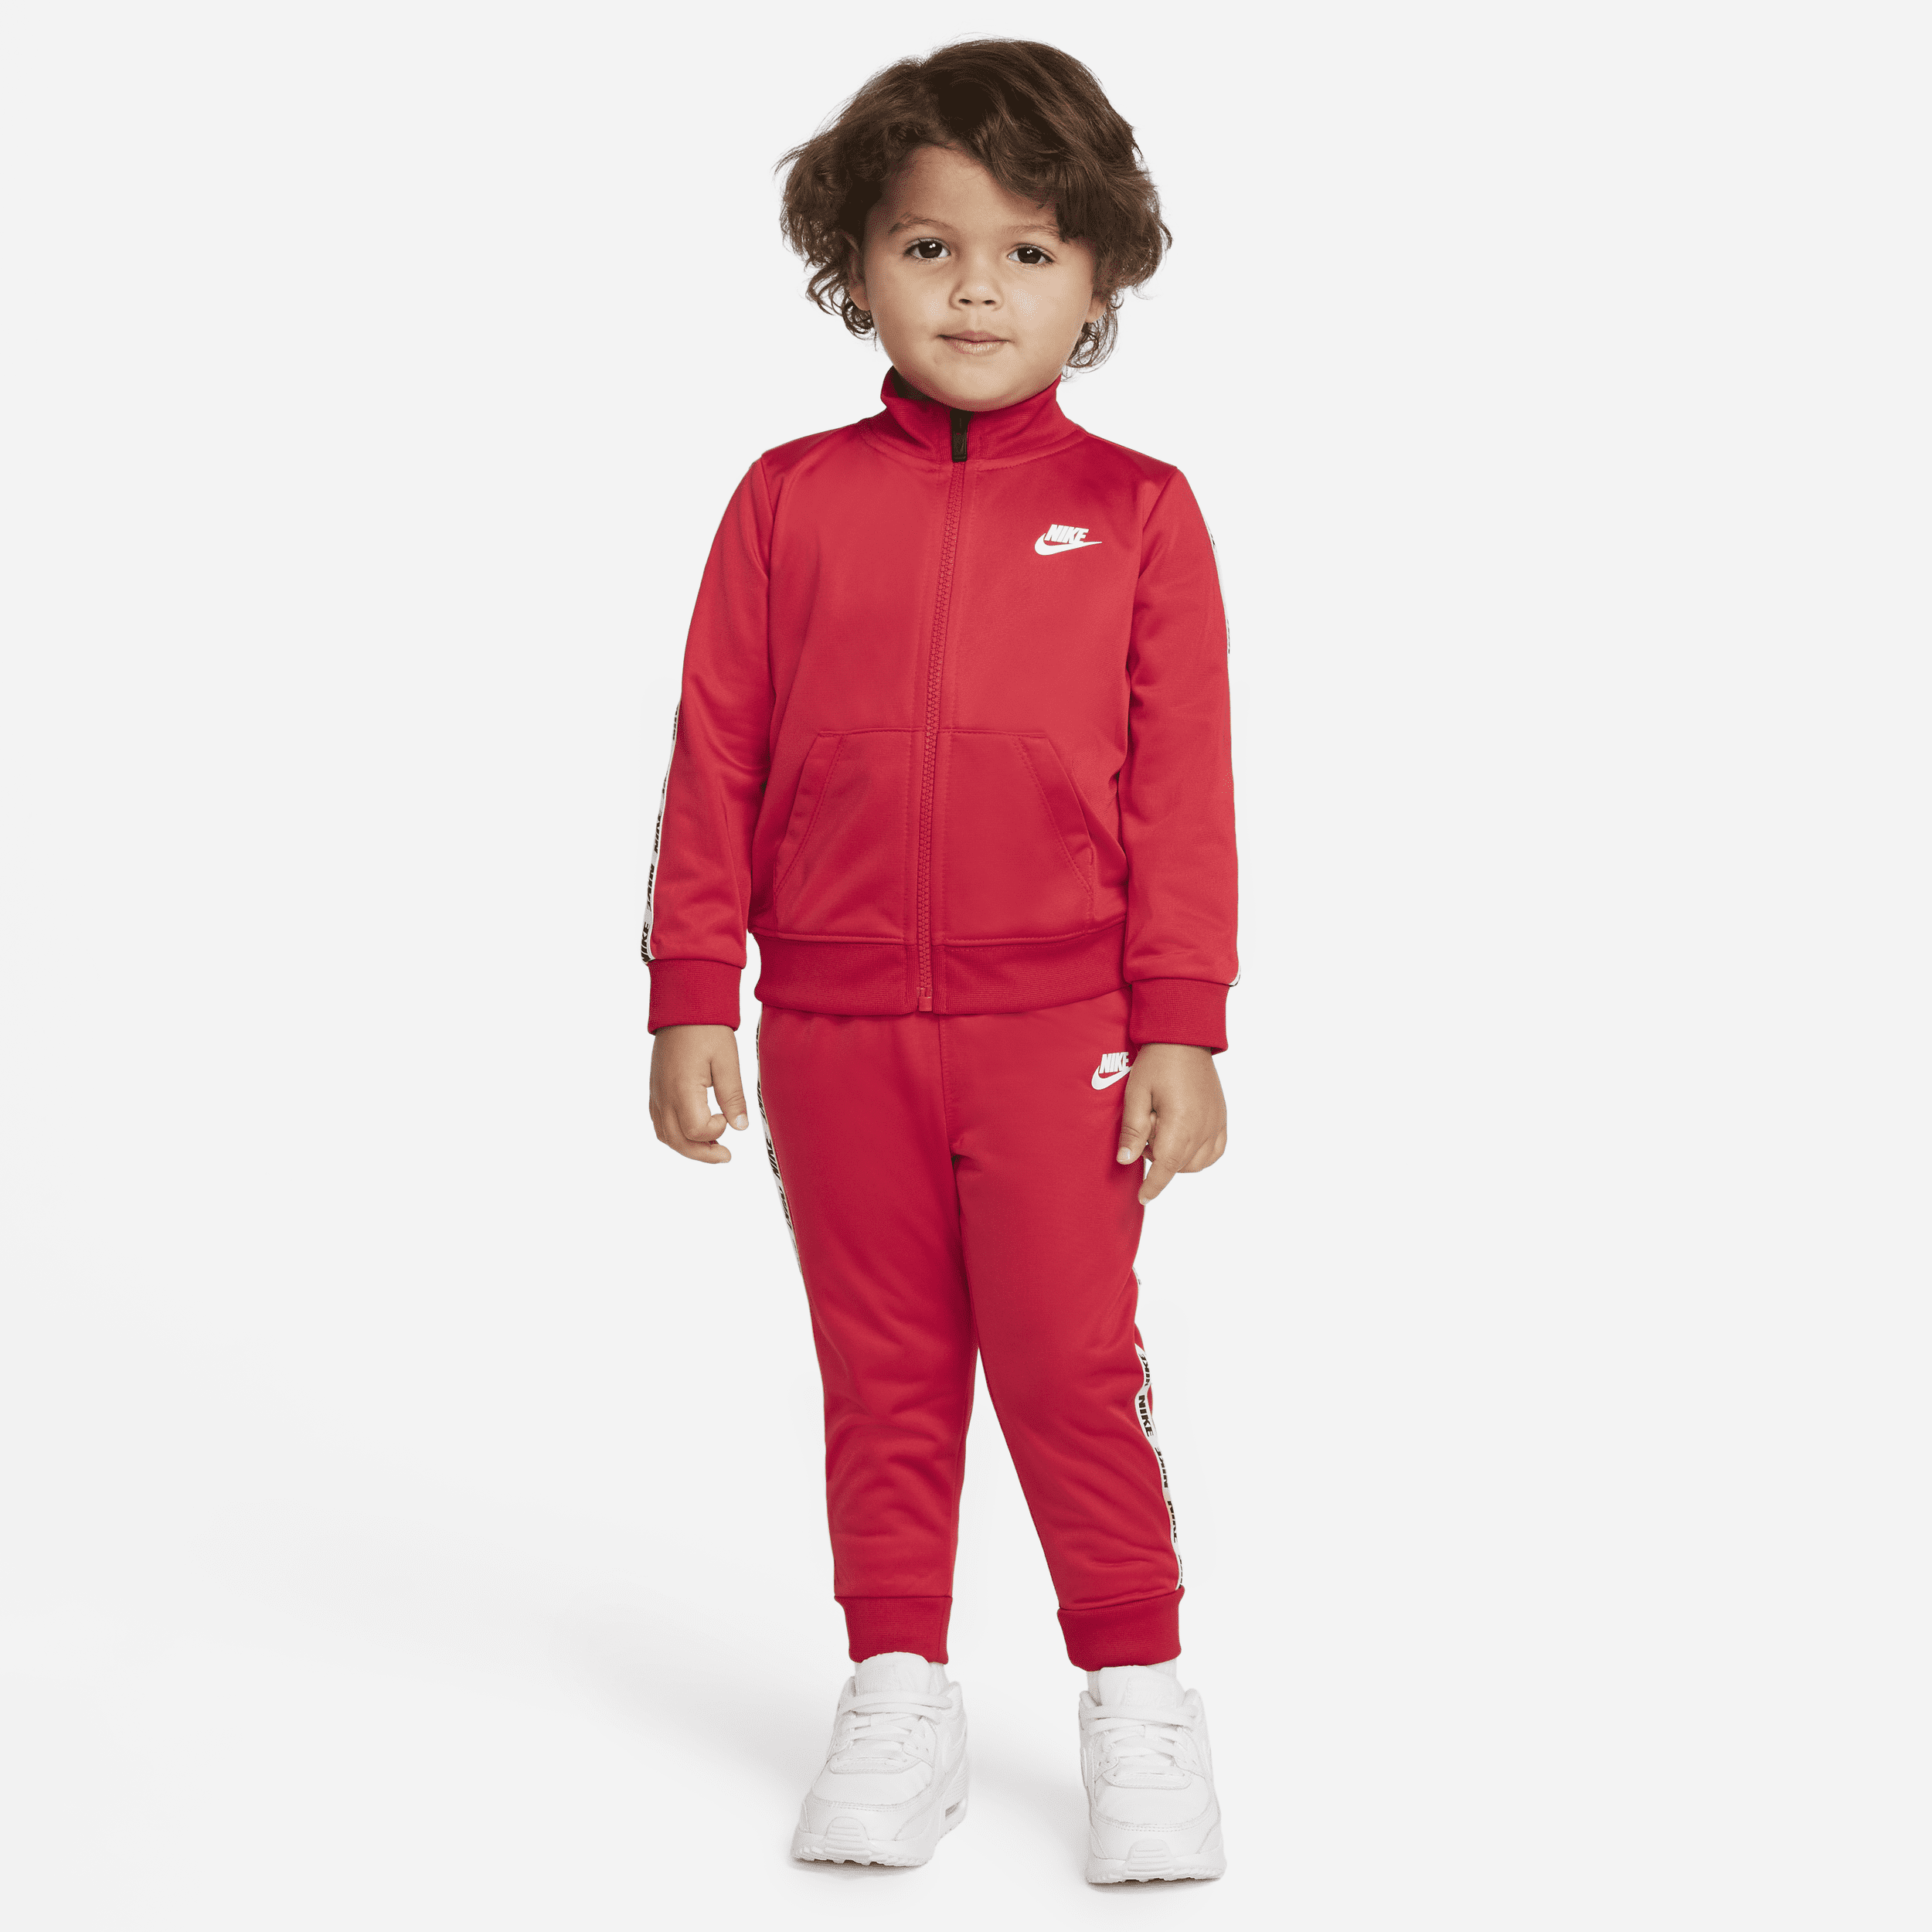 Nike Chándal - Bebé (12-24 M) - Rojo